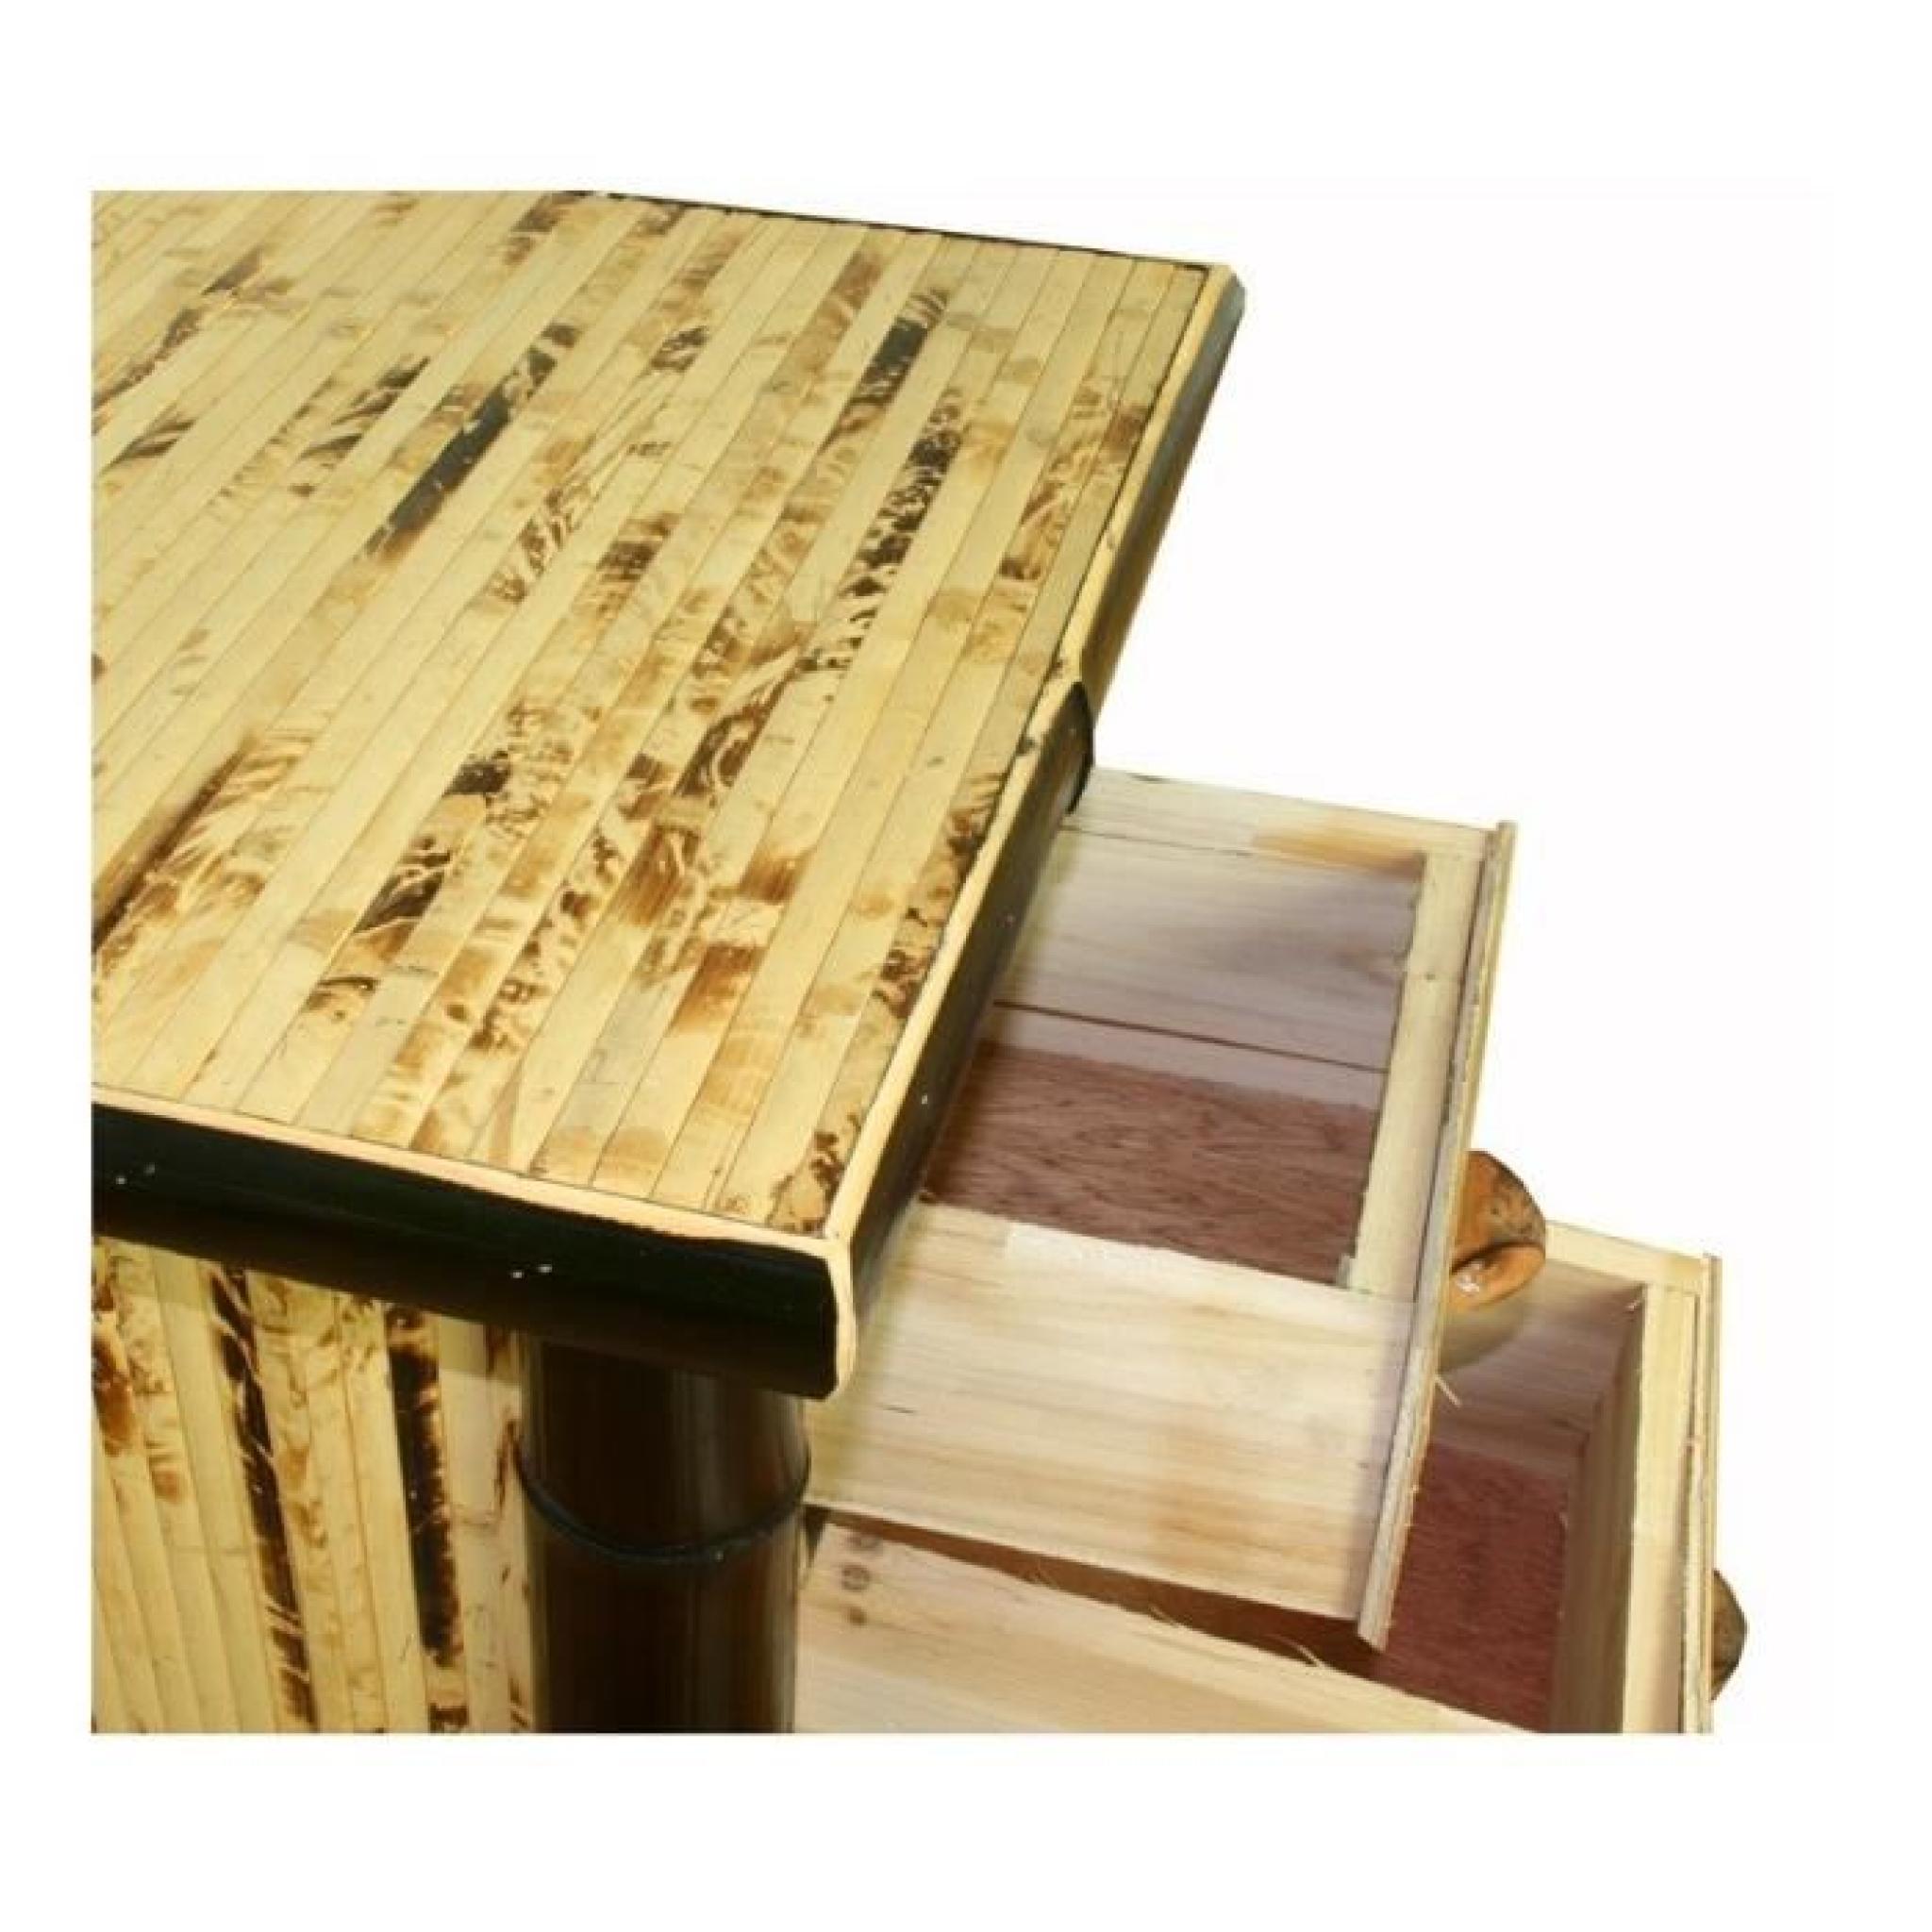 Table de chevet / nuit en bambou couleur brun foncé verni 40x45x40 cm MOC06003 pas cher